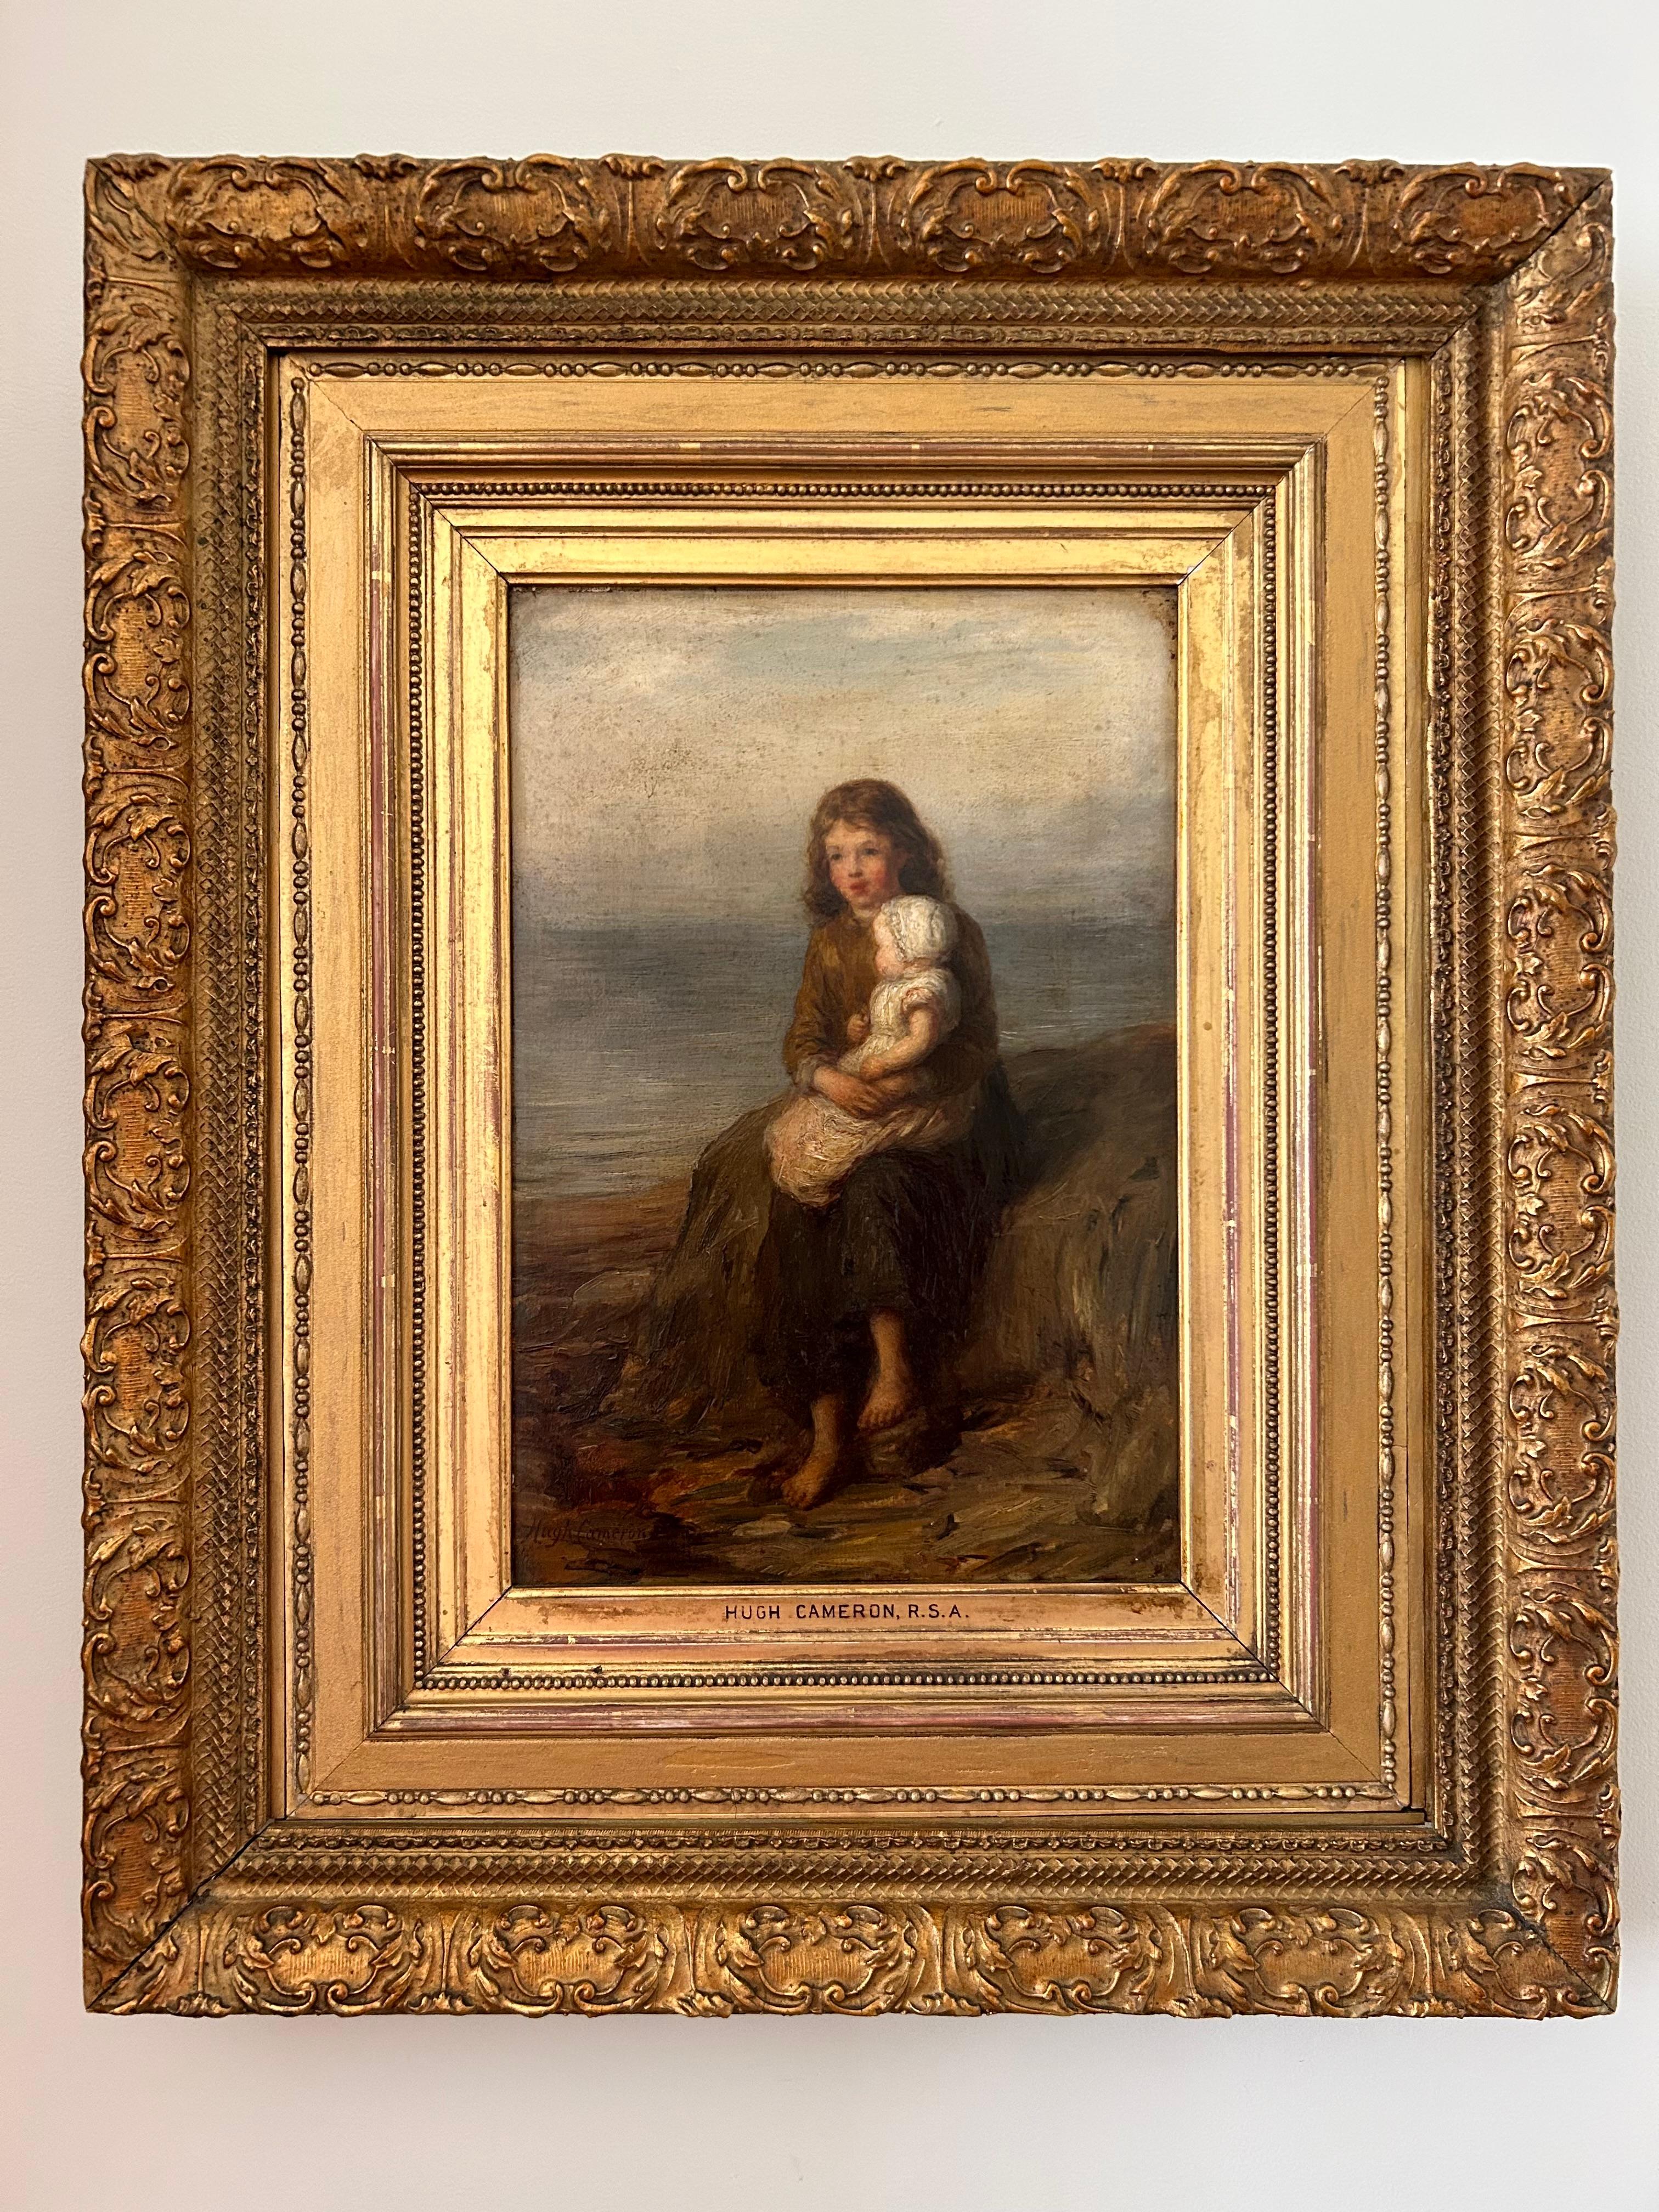 Magnifique huile sur toile de l'artiste écossais du XIXe siècle Hughes Cameron, RSA RSW, ROI (1835-1918), dans un cadre doré exquis. Cette peinture est un exemple particulièrement émouvant et nostalgique du travail de Cameron. Cameron était réputé